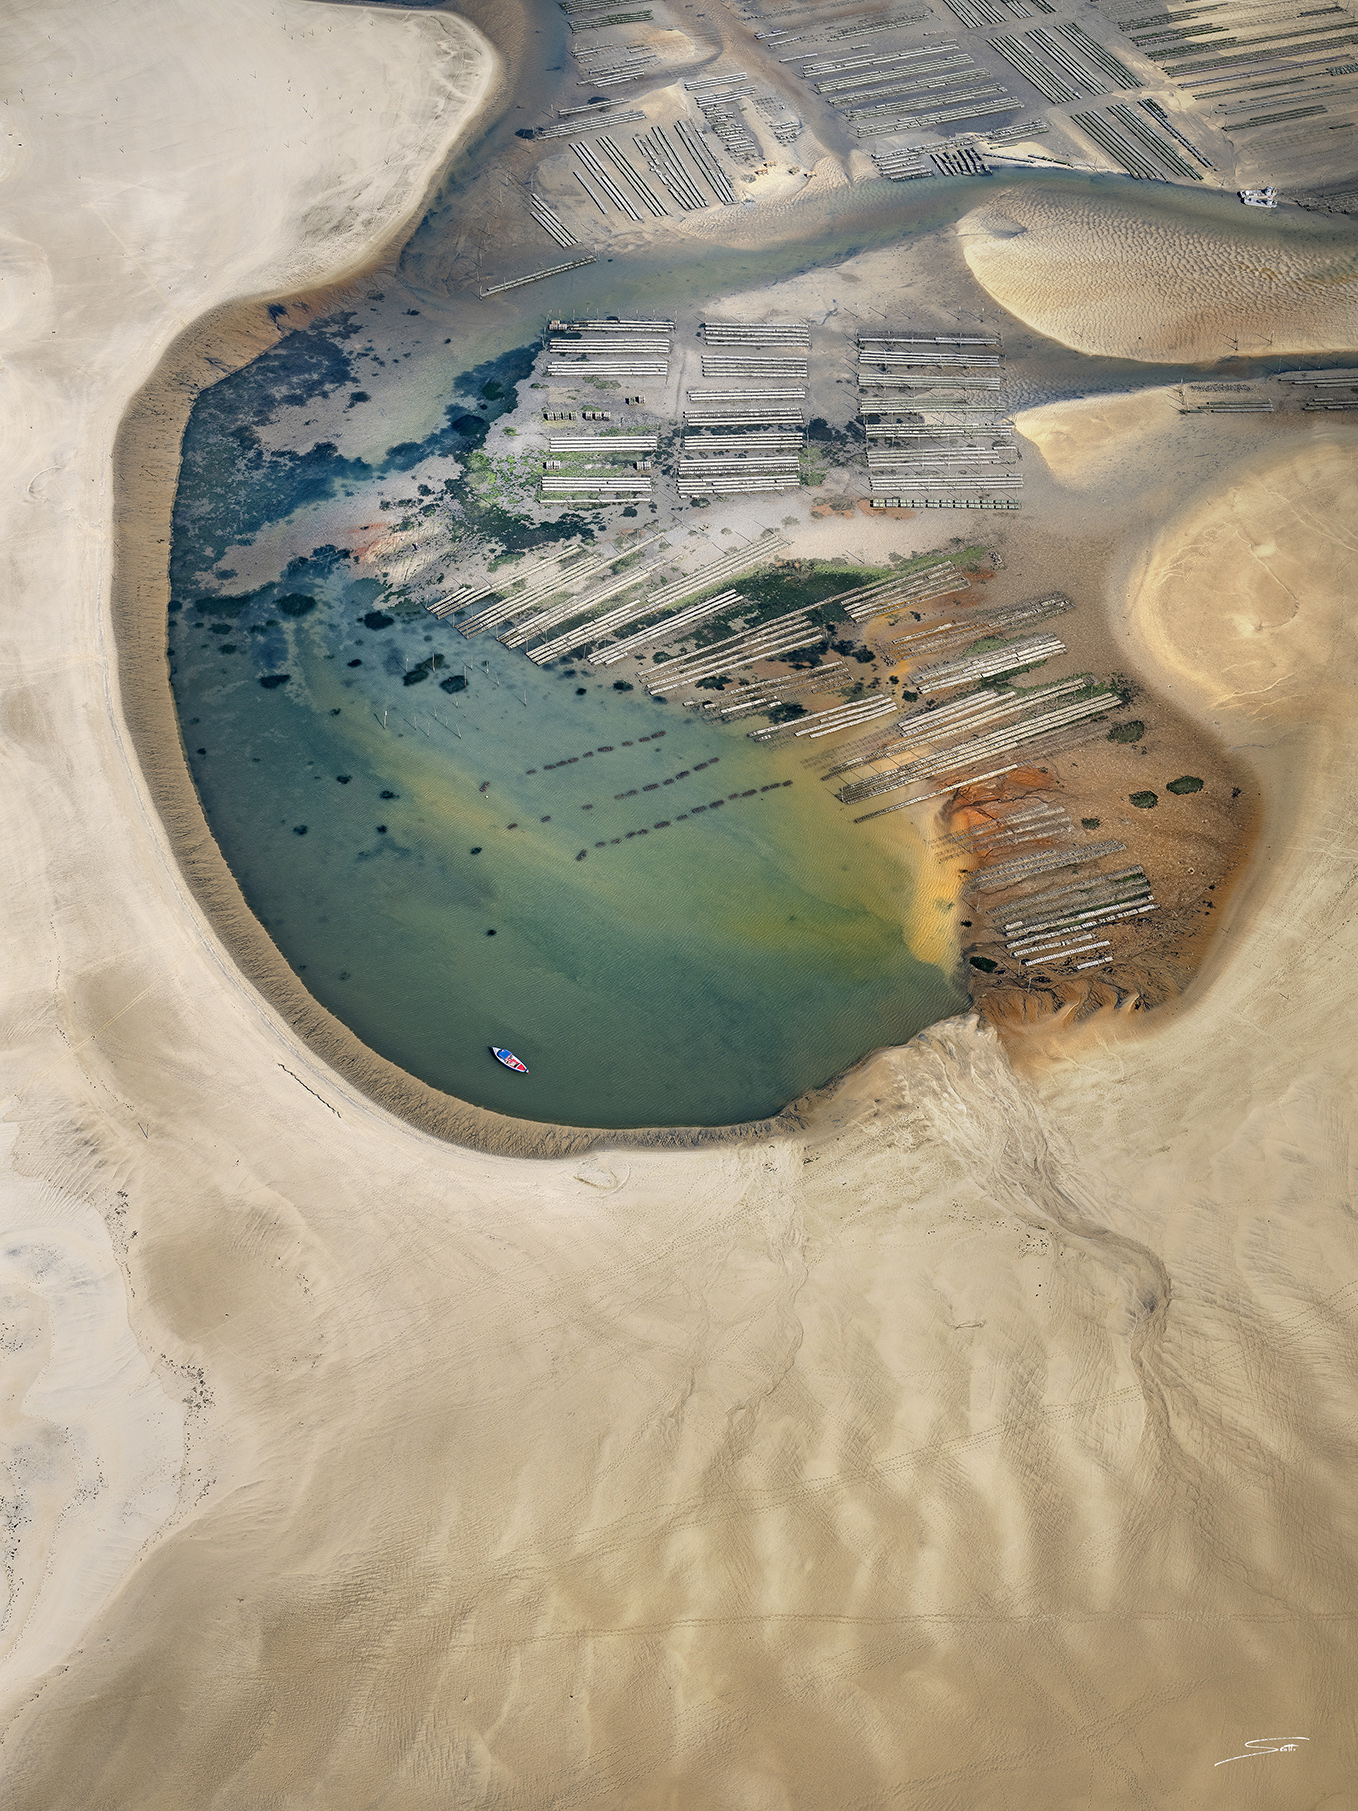 Photographie aérienne réalisée en ULM de la conche sud du Banc d'Arguin sur le Bassin d'Arcachon. Parcs à huitres, plancton et décomposition de la matière organique et alios composent cette prise de vue originale.